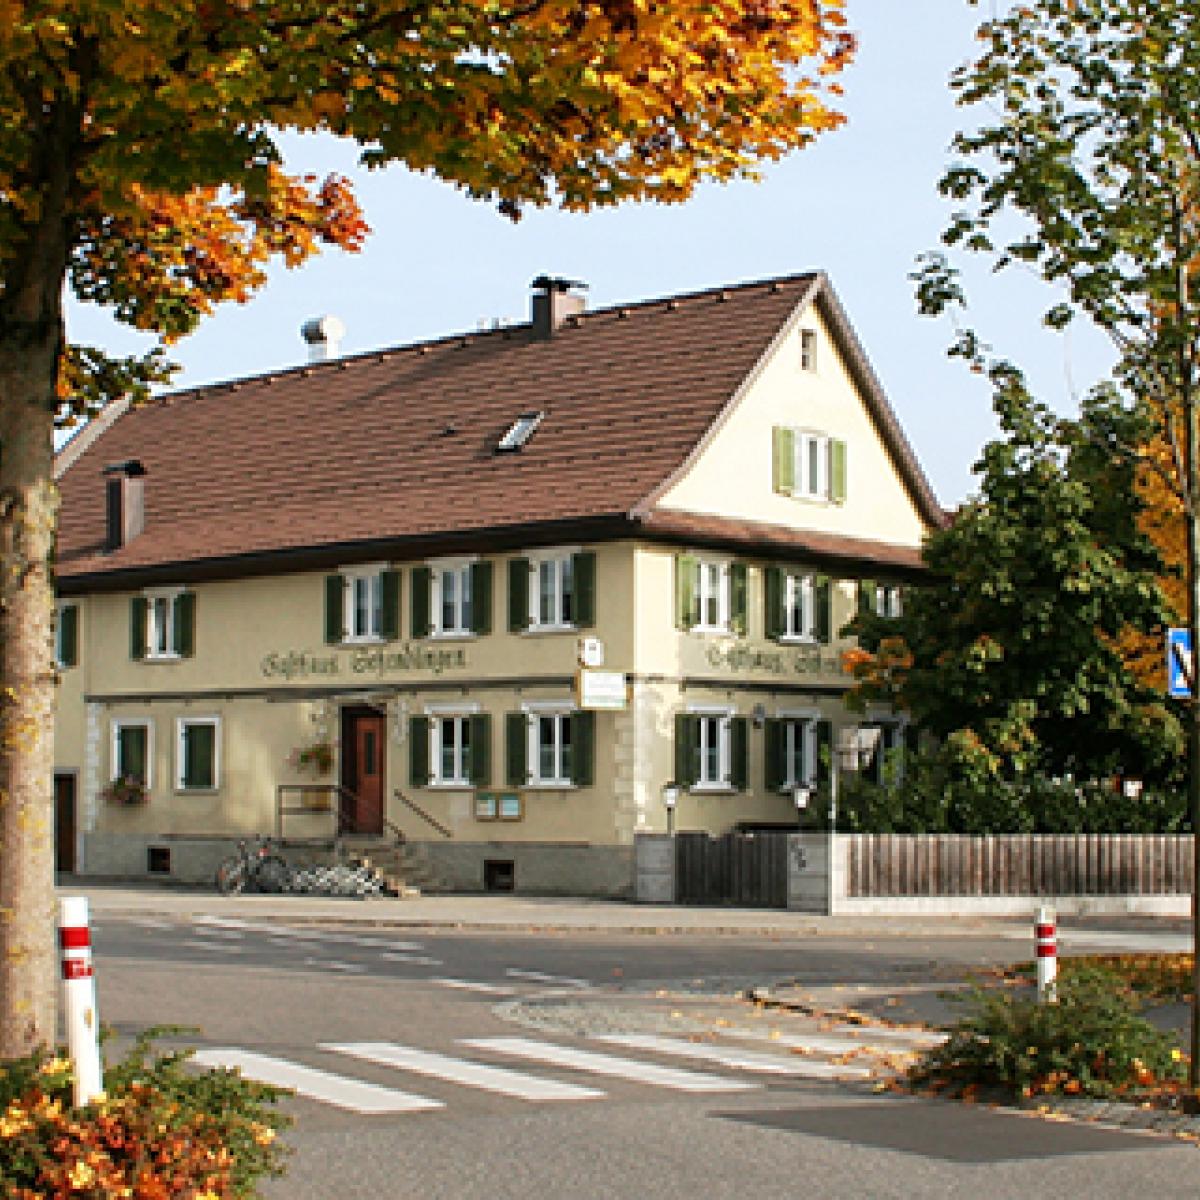 Gasthaus Schendlingen in Bregenz